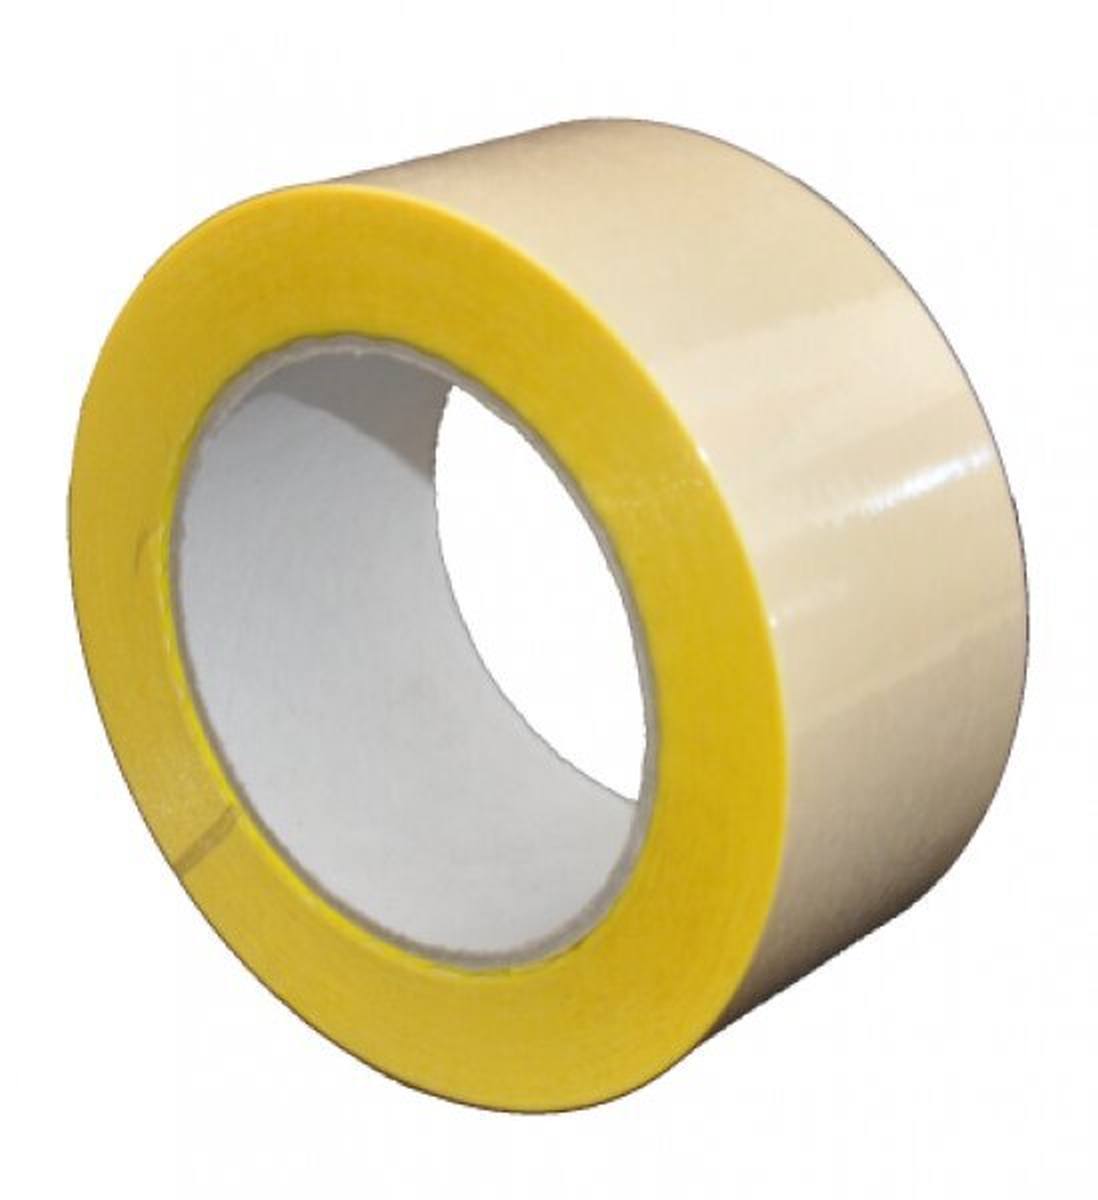 S-K-S 407 Cinta adhesiva de doble cara con soporte de polipropileno, alta / baja adhesividad, amarilla, 450 mm x 50 m, 0,15 mm